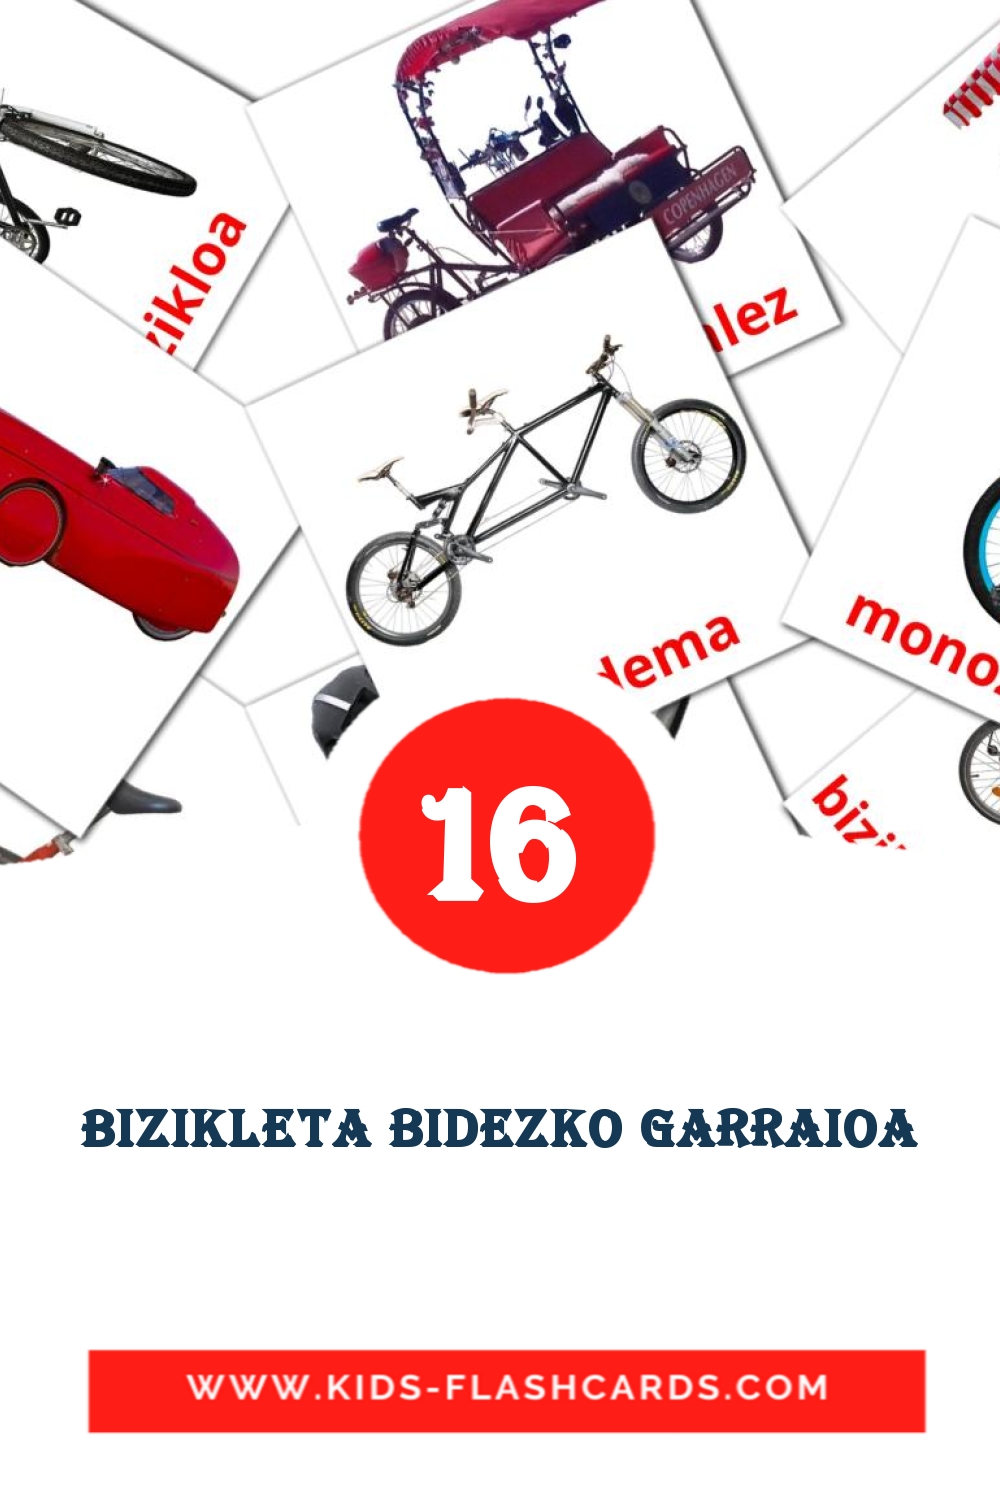 16 Bizikleta bidezko garraioa Bildkarten für den Kindergarten auf Baskische